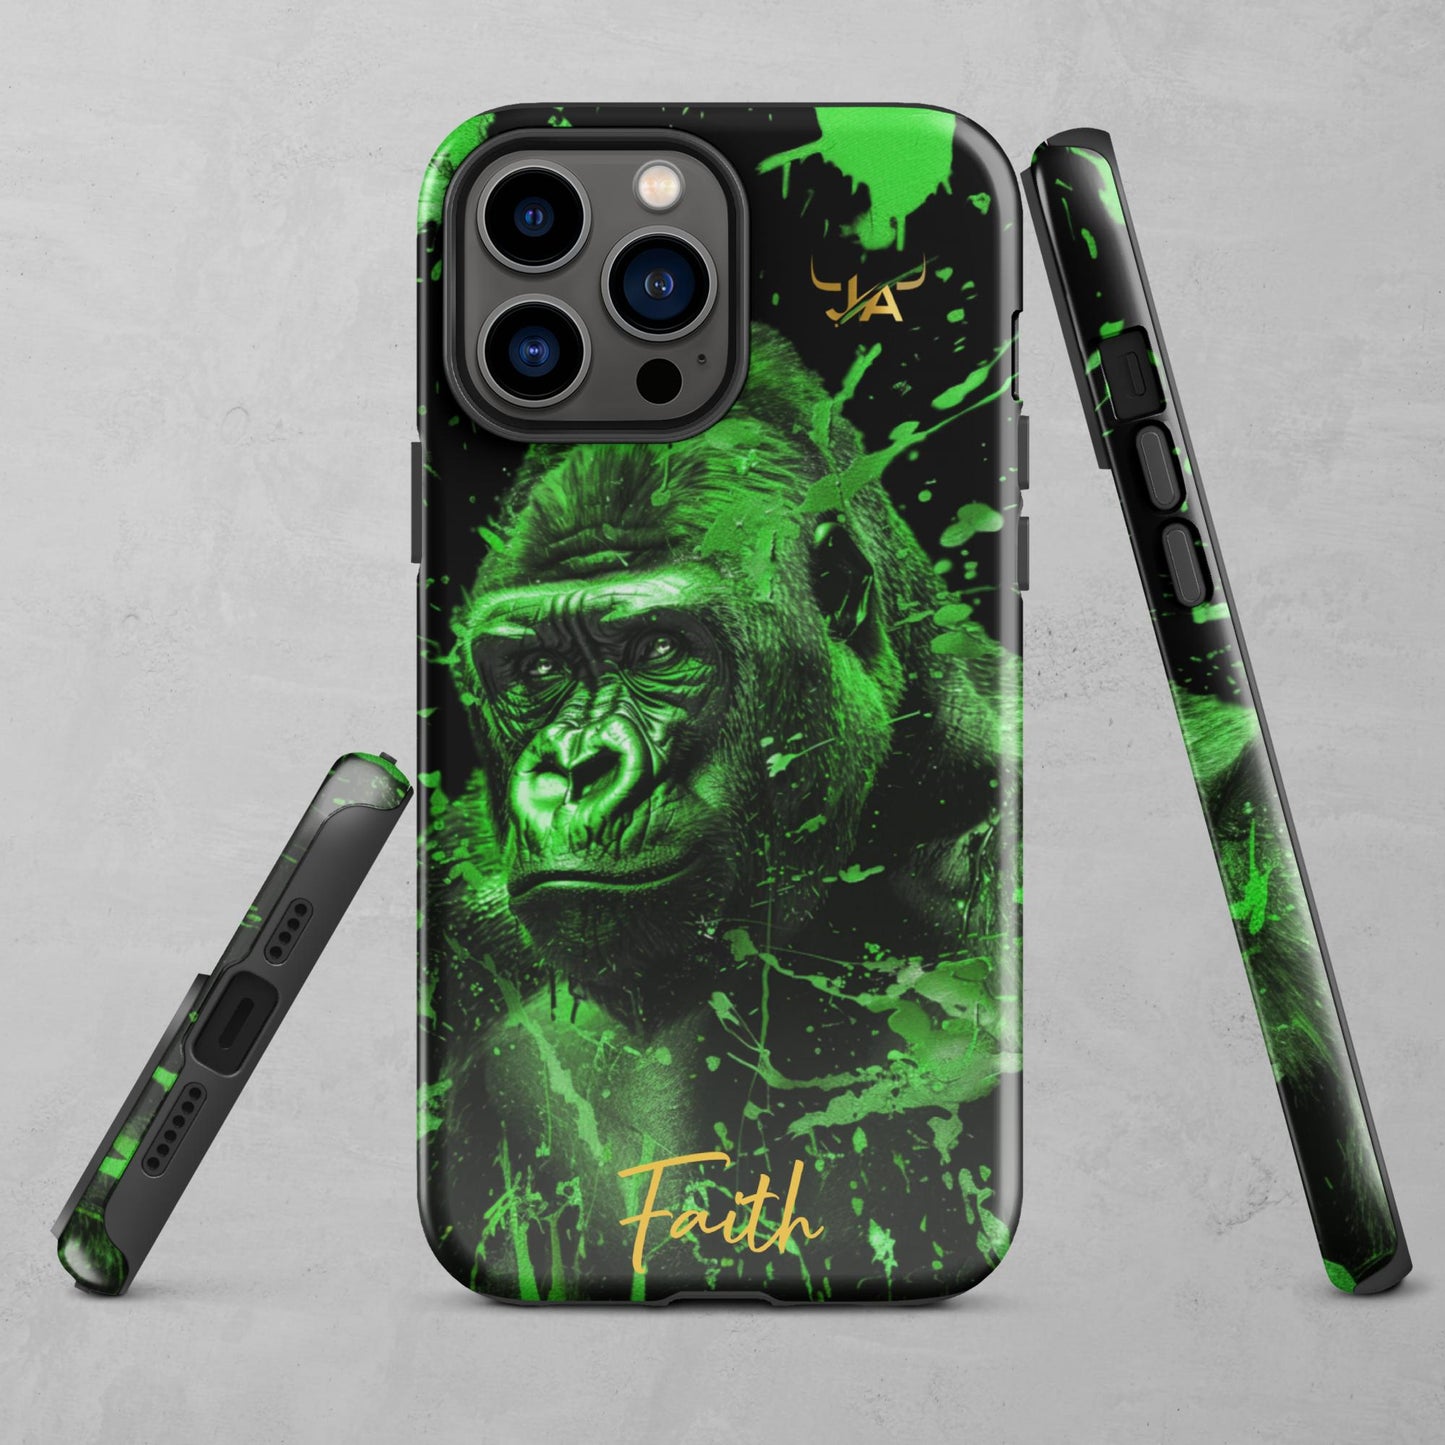 J.A Faith Green GorillaTough Case for iPhone®